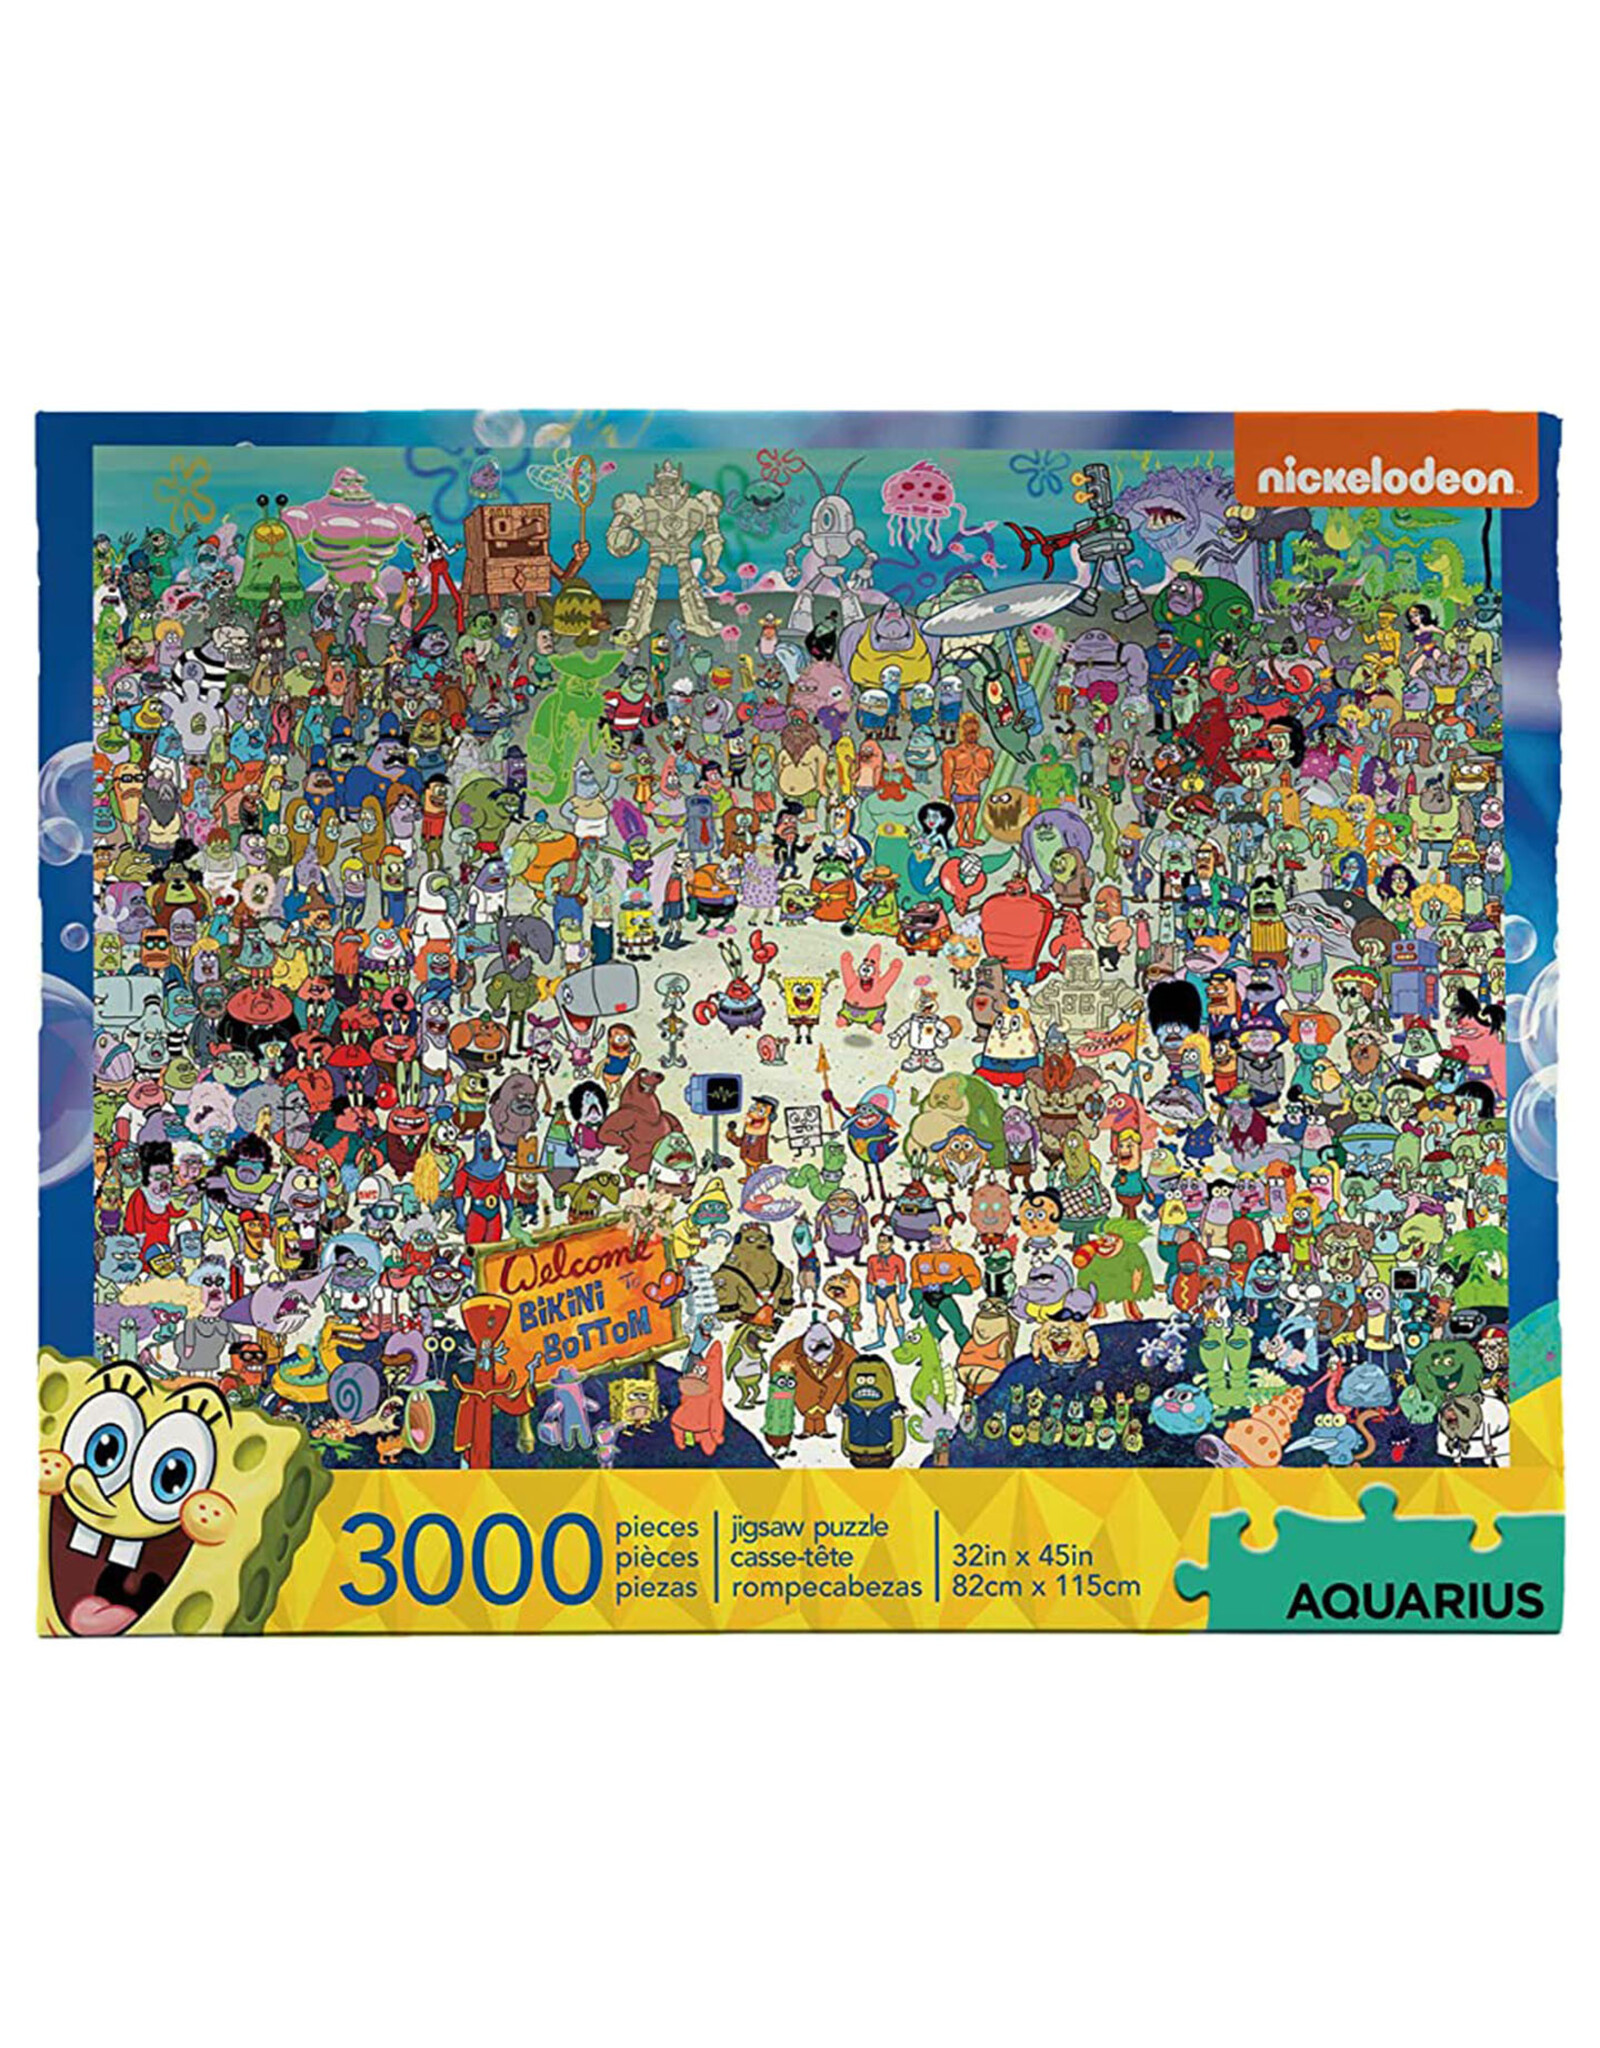 ﻿﻿﻿Spongebob Squarepants Puzzle 3000 Piece Jigsaw Puzzle